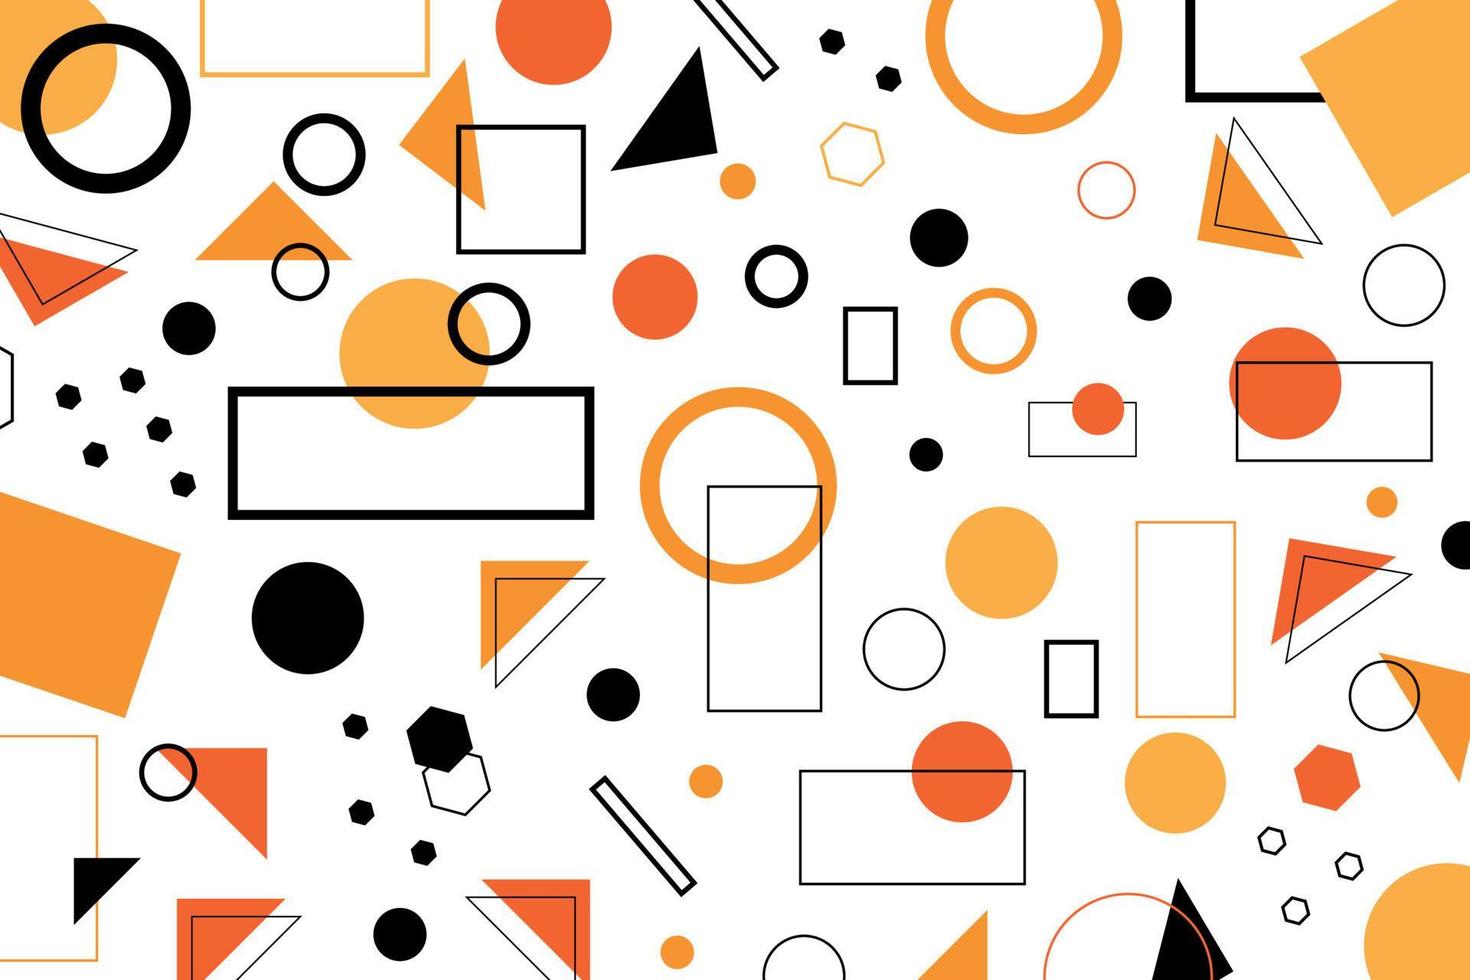 bakgrund med geometriska former i orange och svarta färger vektor